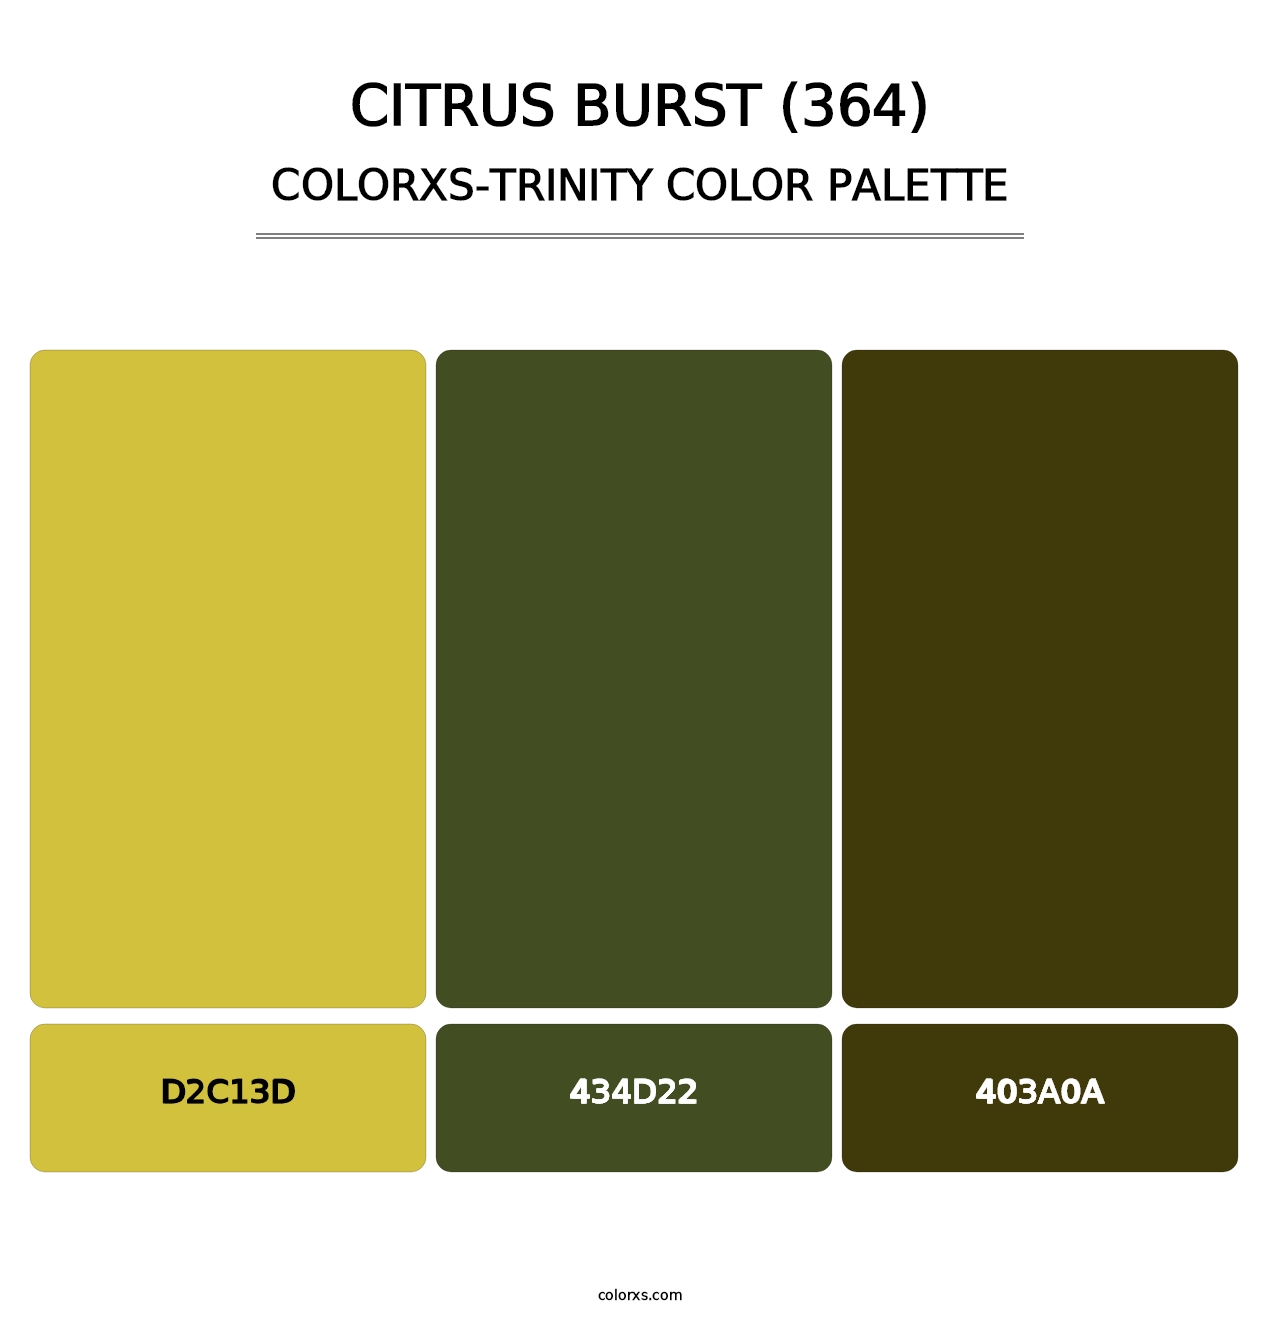 Citrus Burst (364) - Colorxs Trinity Palette